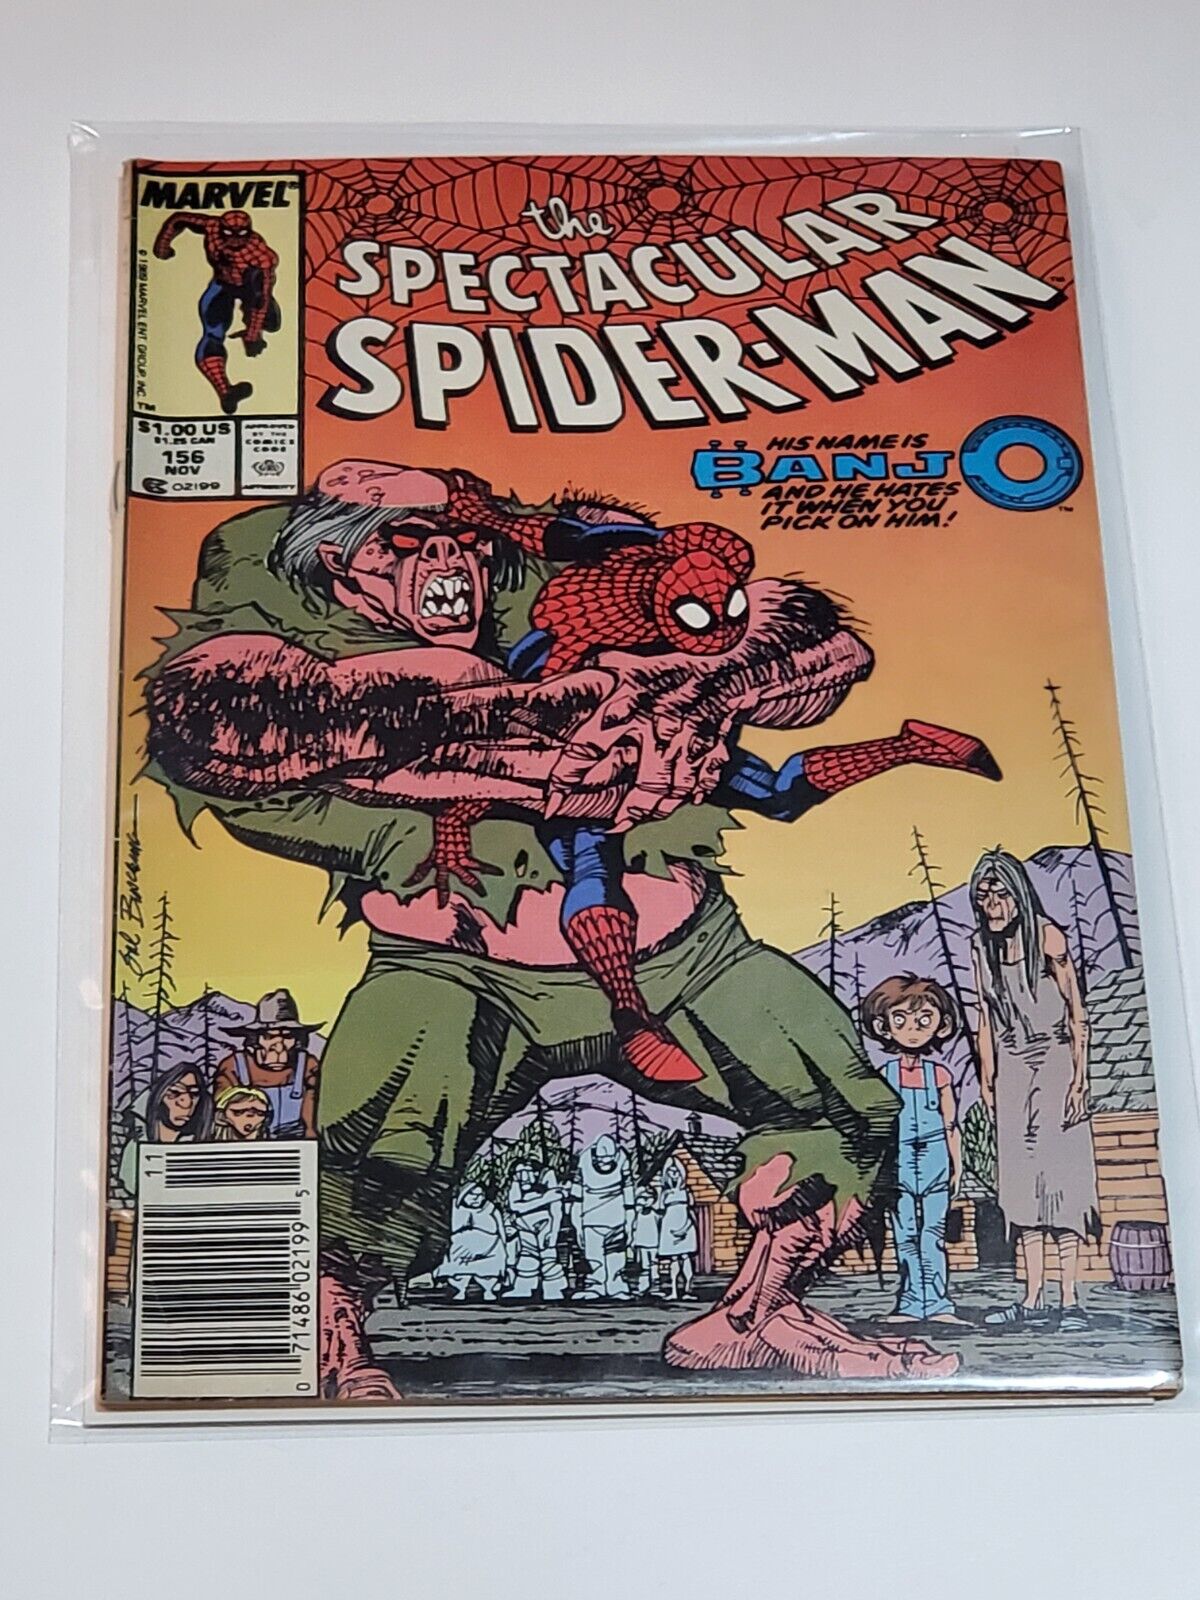 Spectacular Spider-Man #156, Vol. 1 1989 Marvel Comics